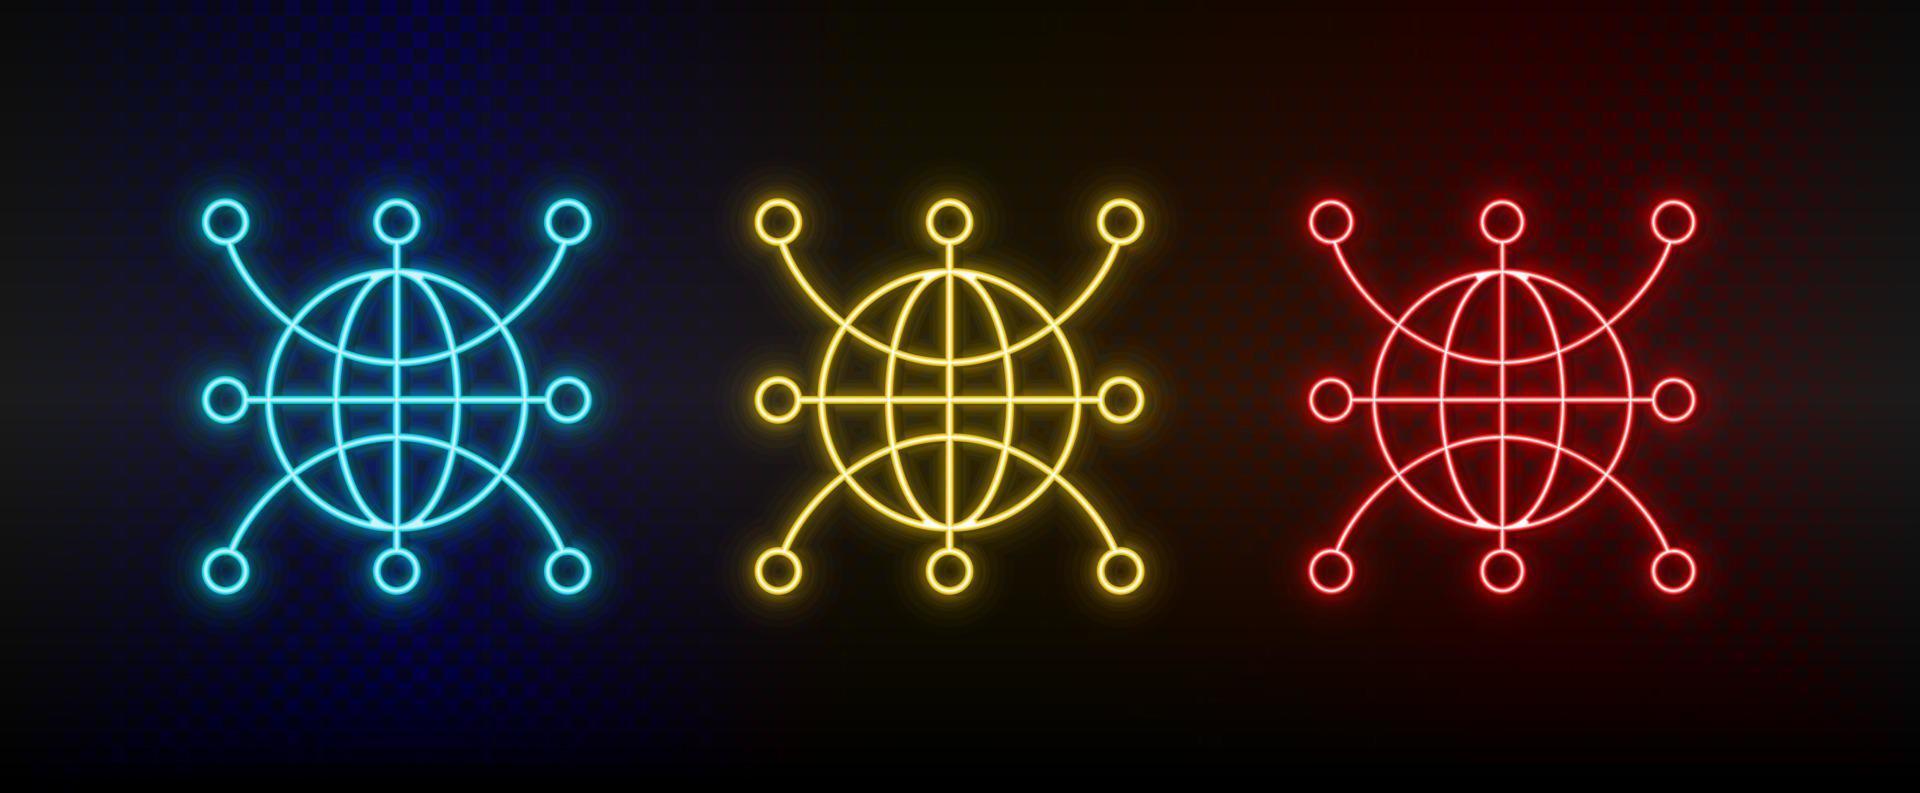 icônes au néon. monde du réseau mondial web. ensemble d'icônes vectorielles néon rouge, bleu, jaune sur fond sombre vecteur